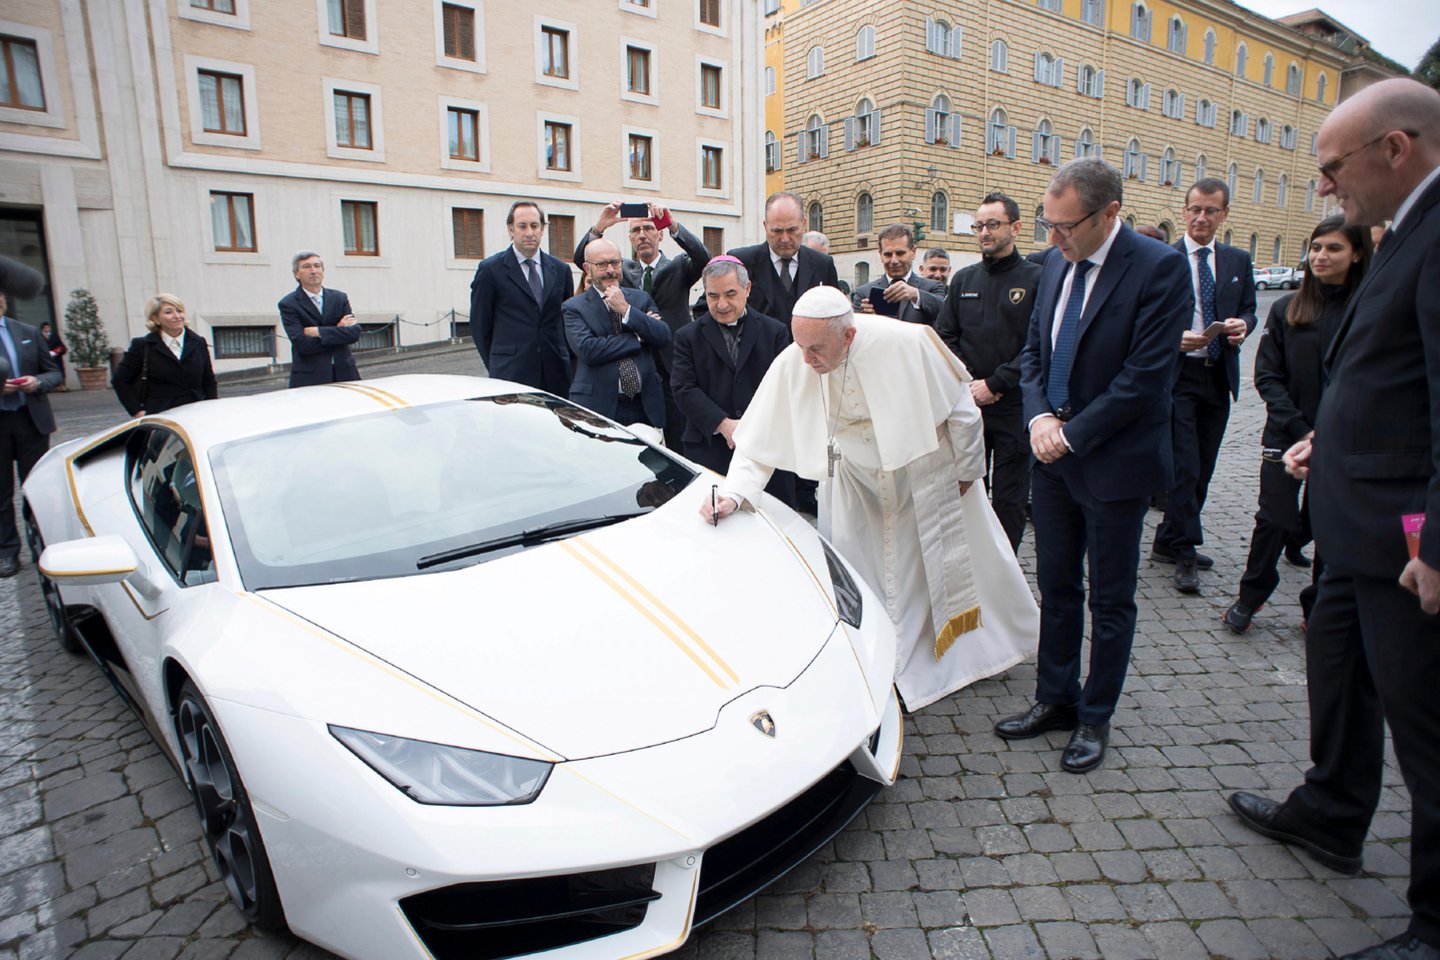 Popiežiaus „Lamborghini“ aukcione parduotas už beveik 900 000 eurų. <br>Reuters/Scanpix nuotr.